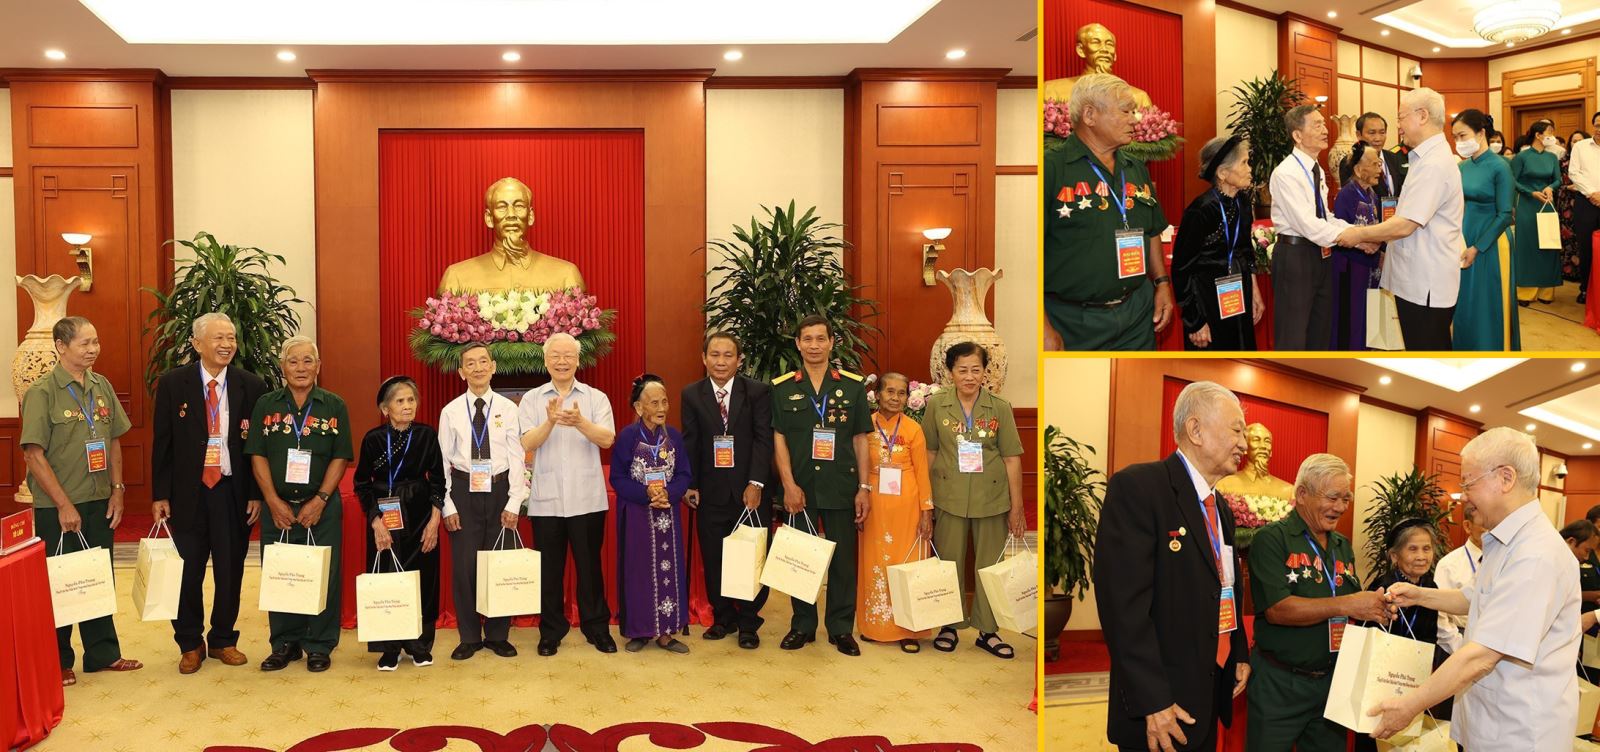 Tổng Bí thư Nguyễn Phú Trọng tặng quà cho các đại biểu người có công tiêu biểu toàn quốc, nhân dịp kỷ niệm 75 năm Ngày Thương binh - Liệt sĩ (27/7/1947 - 27/7/2022).